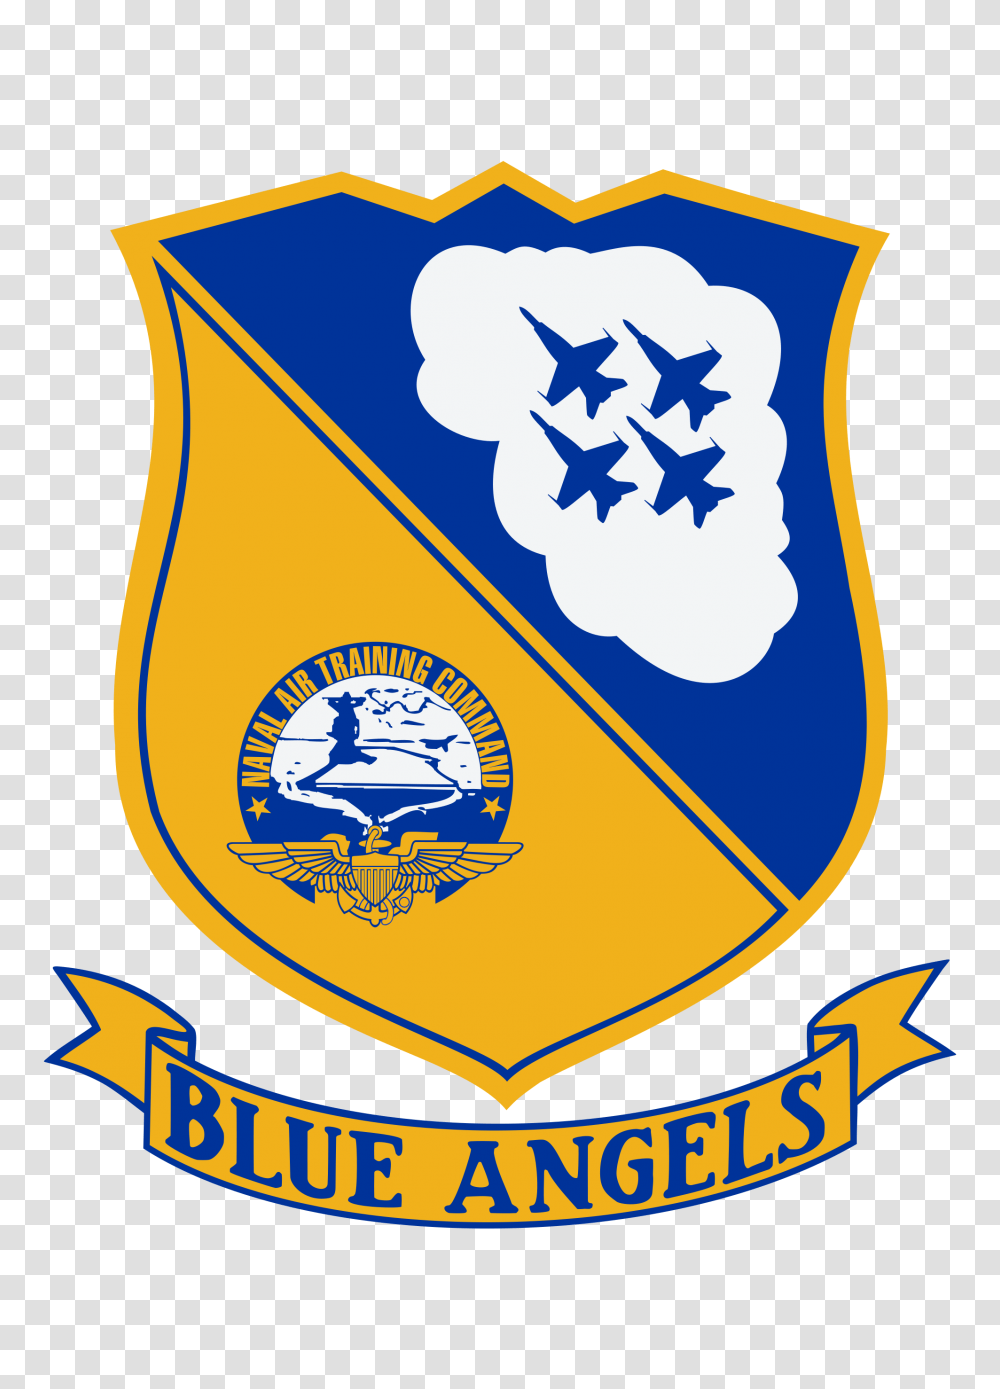 Blue Angels Insignia, Logo, Trademark, Emblem Transparent Png